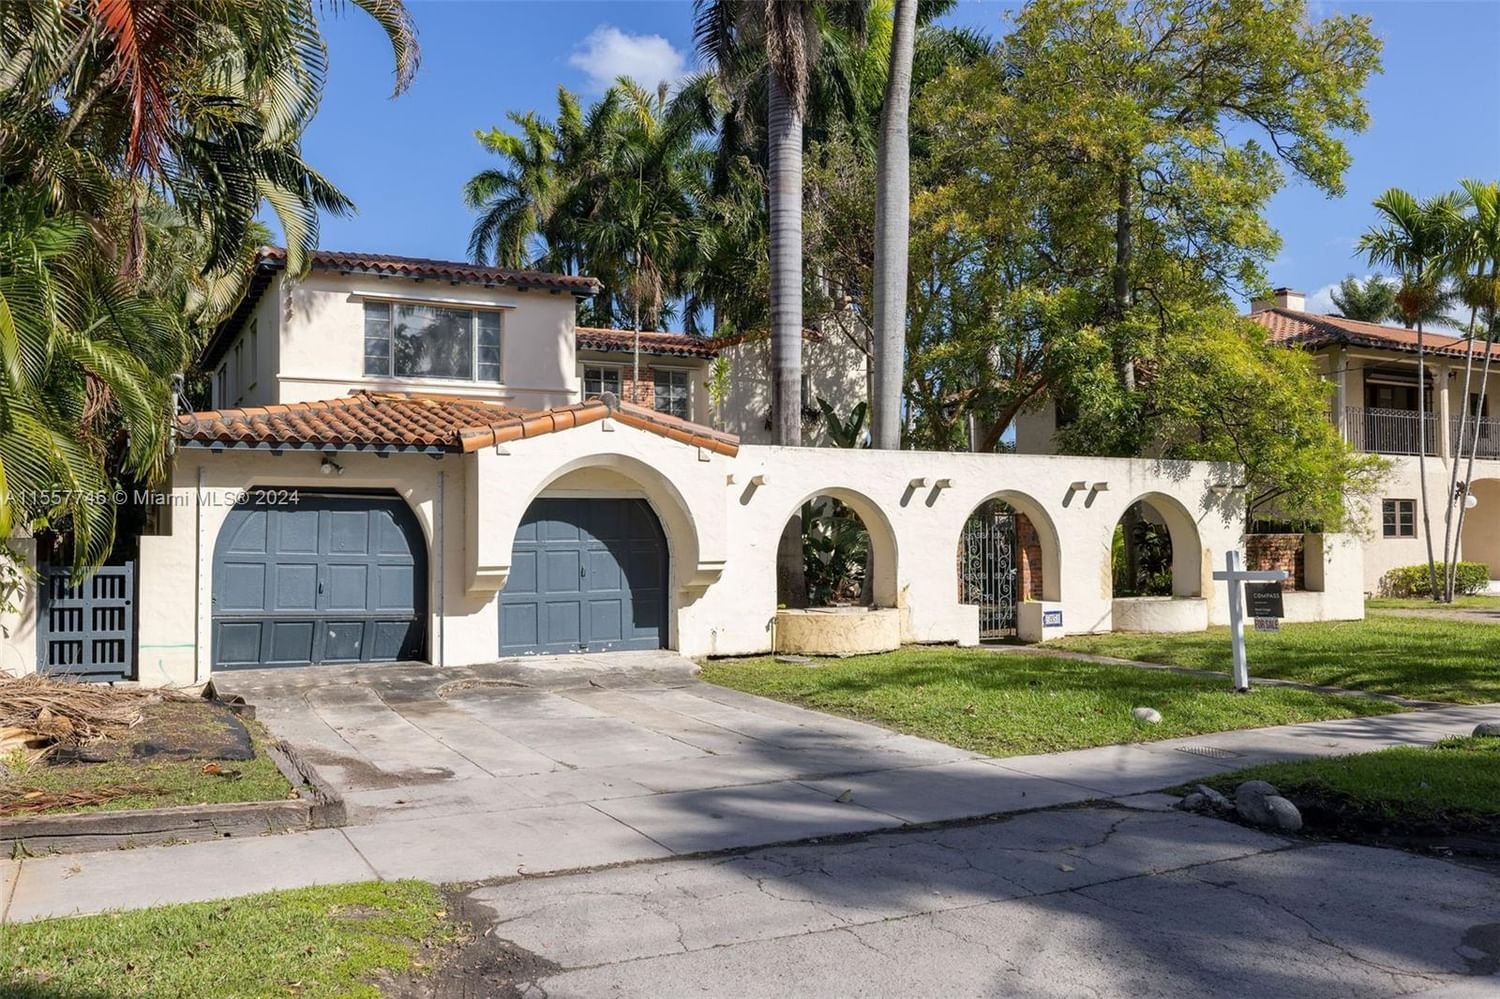 Real estate property located at 5851 Bay Rd, Miami-Dade County, LA GORCE GOLF SUB, Miami Beach, FL